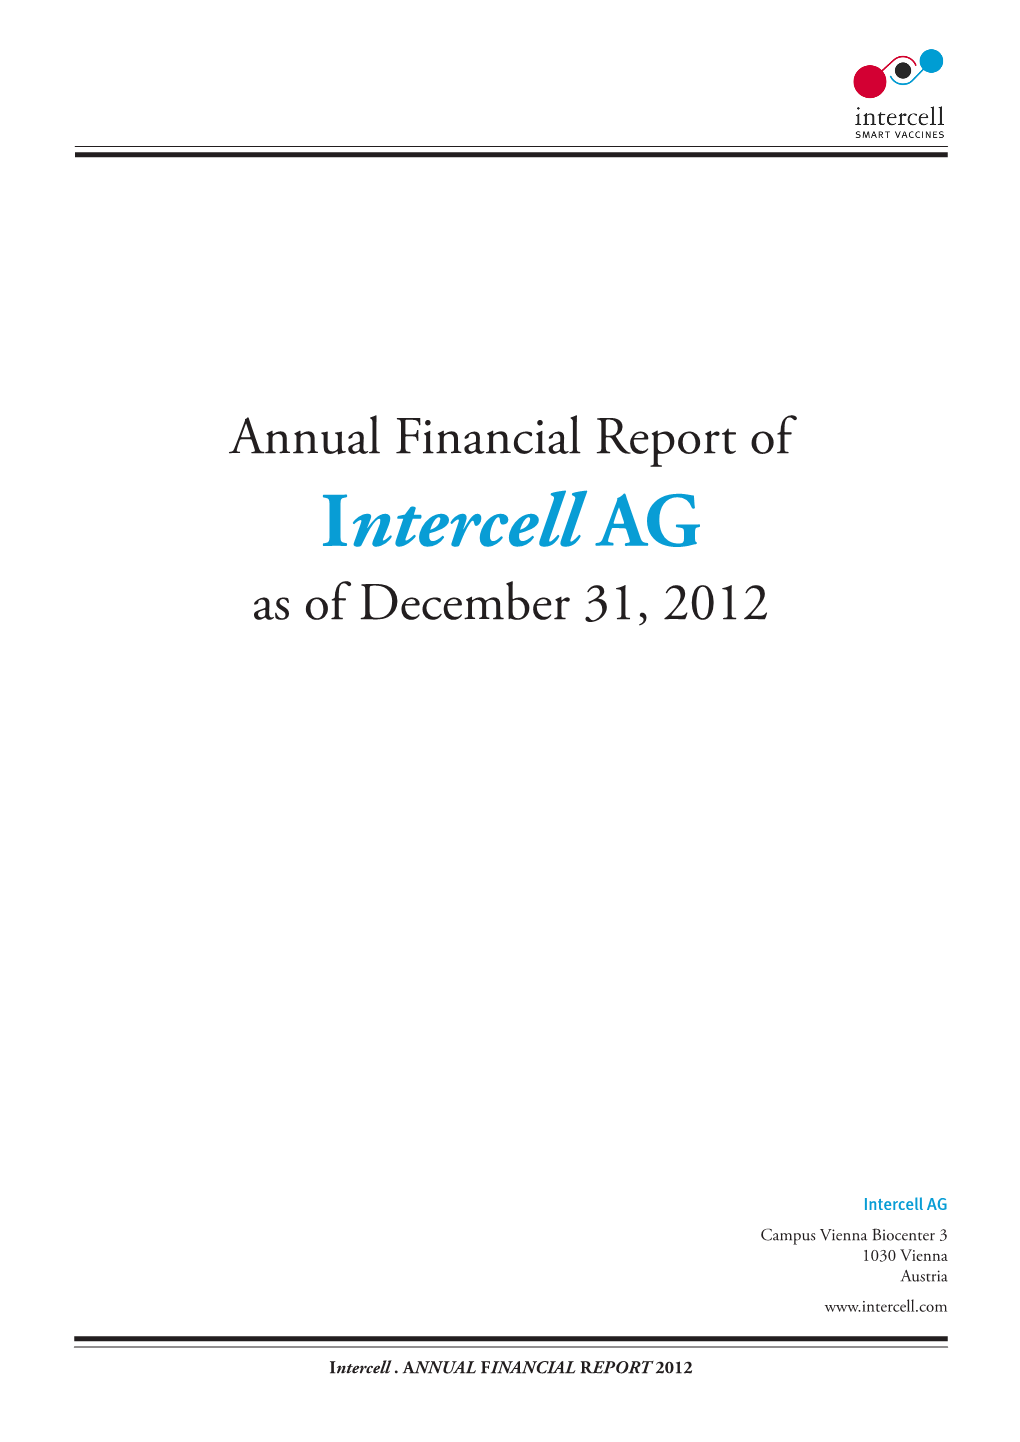 Intercell AG As of December 31, 2012